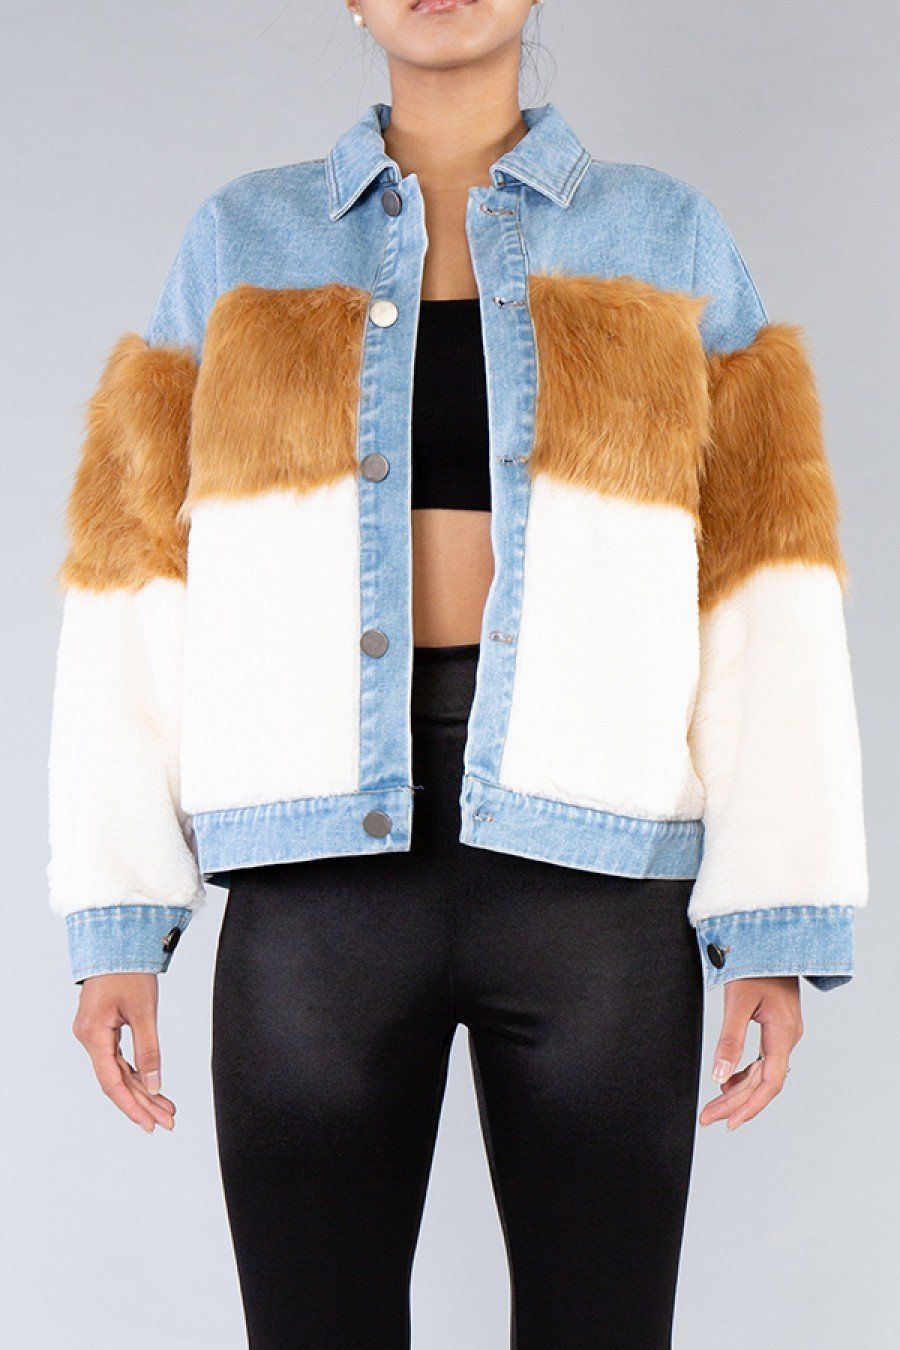 Level Up Denim Fur Jacket - SurgeStyle Boutique